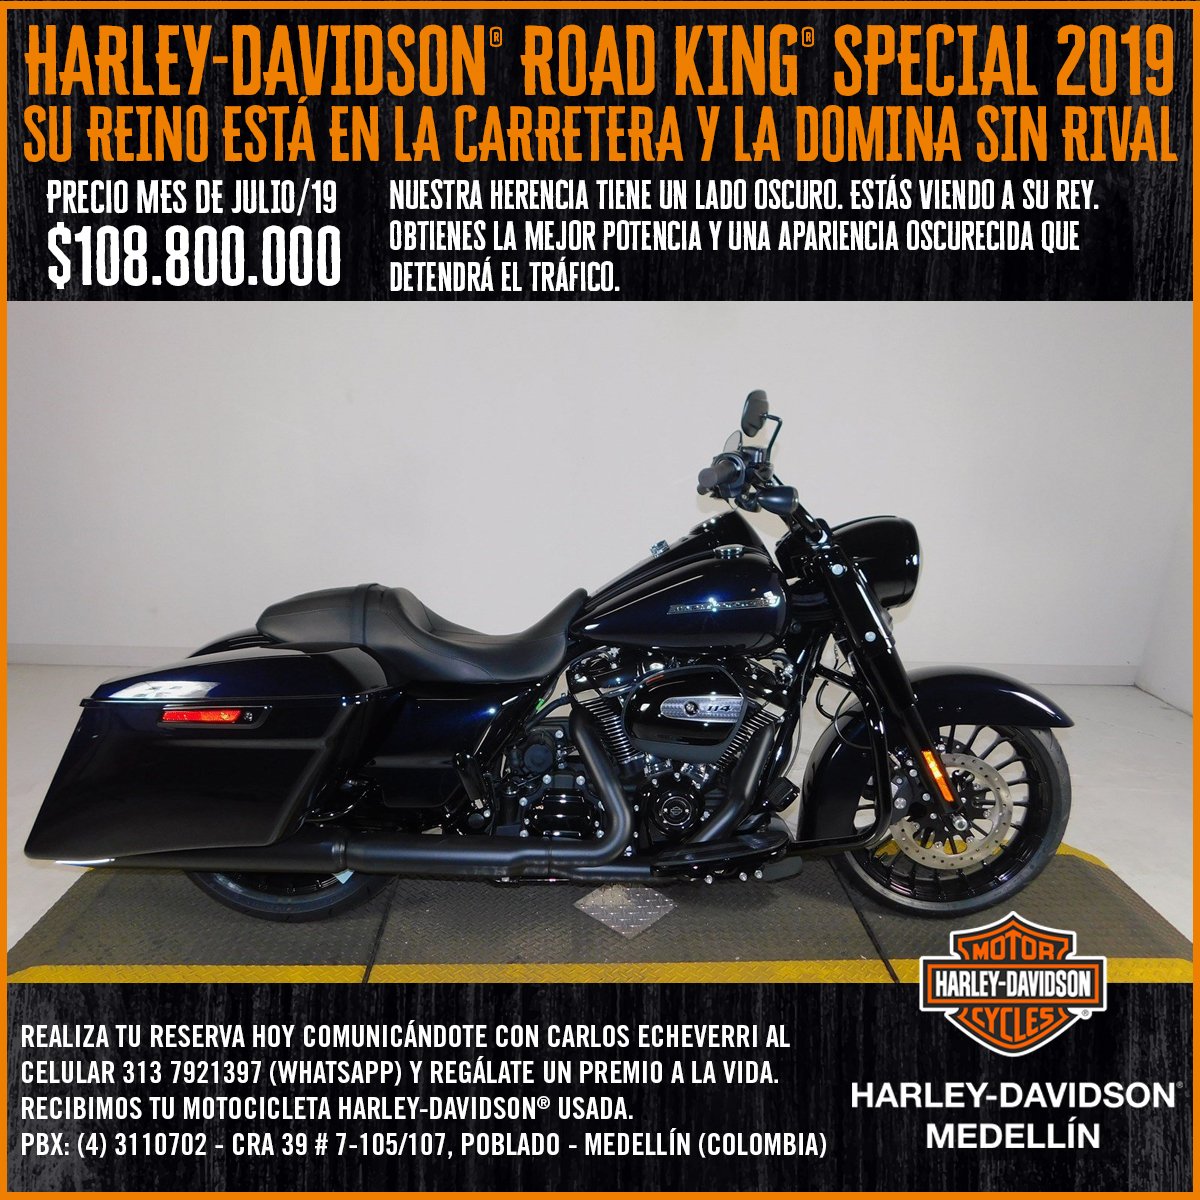 Harley Davidson Road King Special 2019 Midnight Blue Mobil Motor Terbaru Berita Review Panduan Membali Gambar Dan Lebih